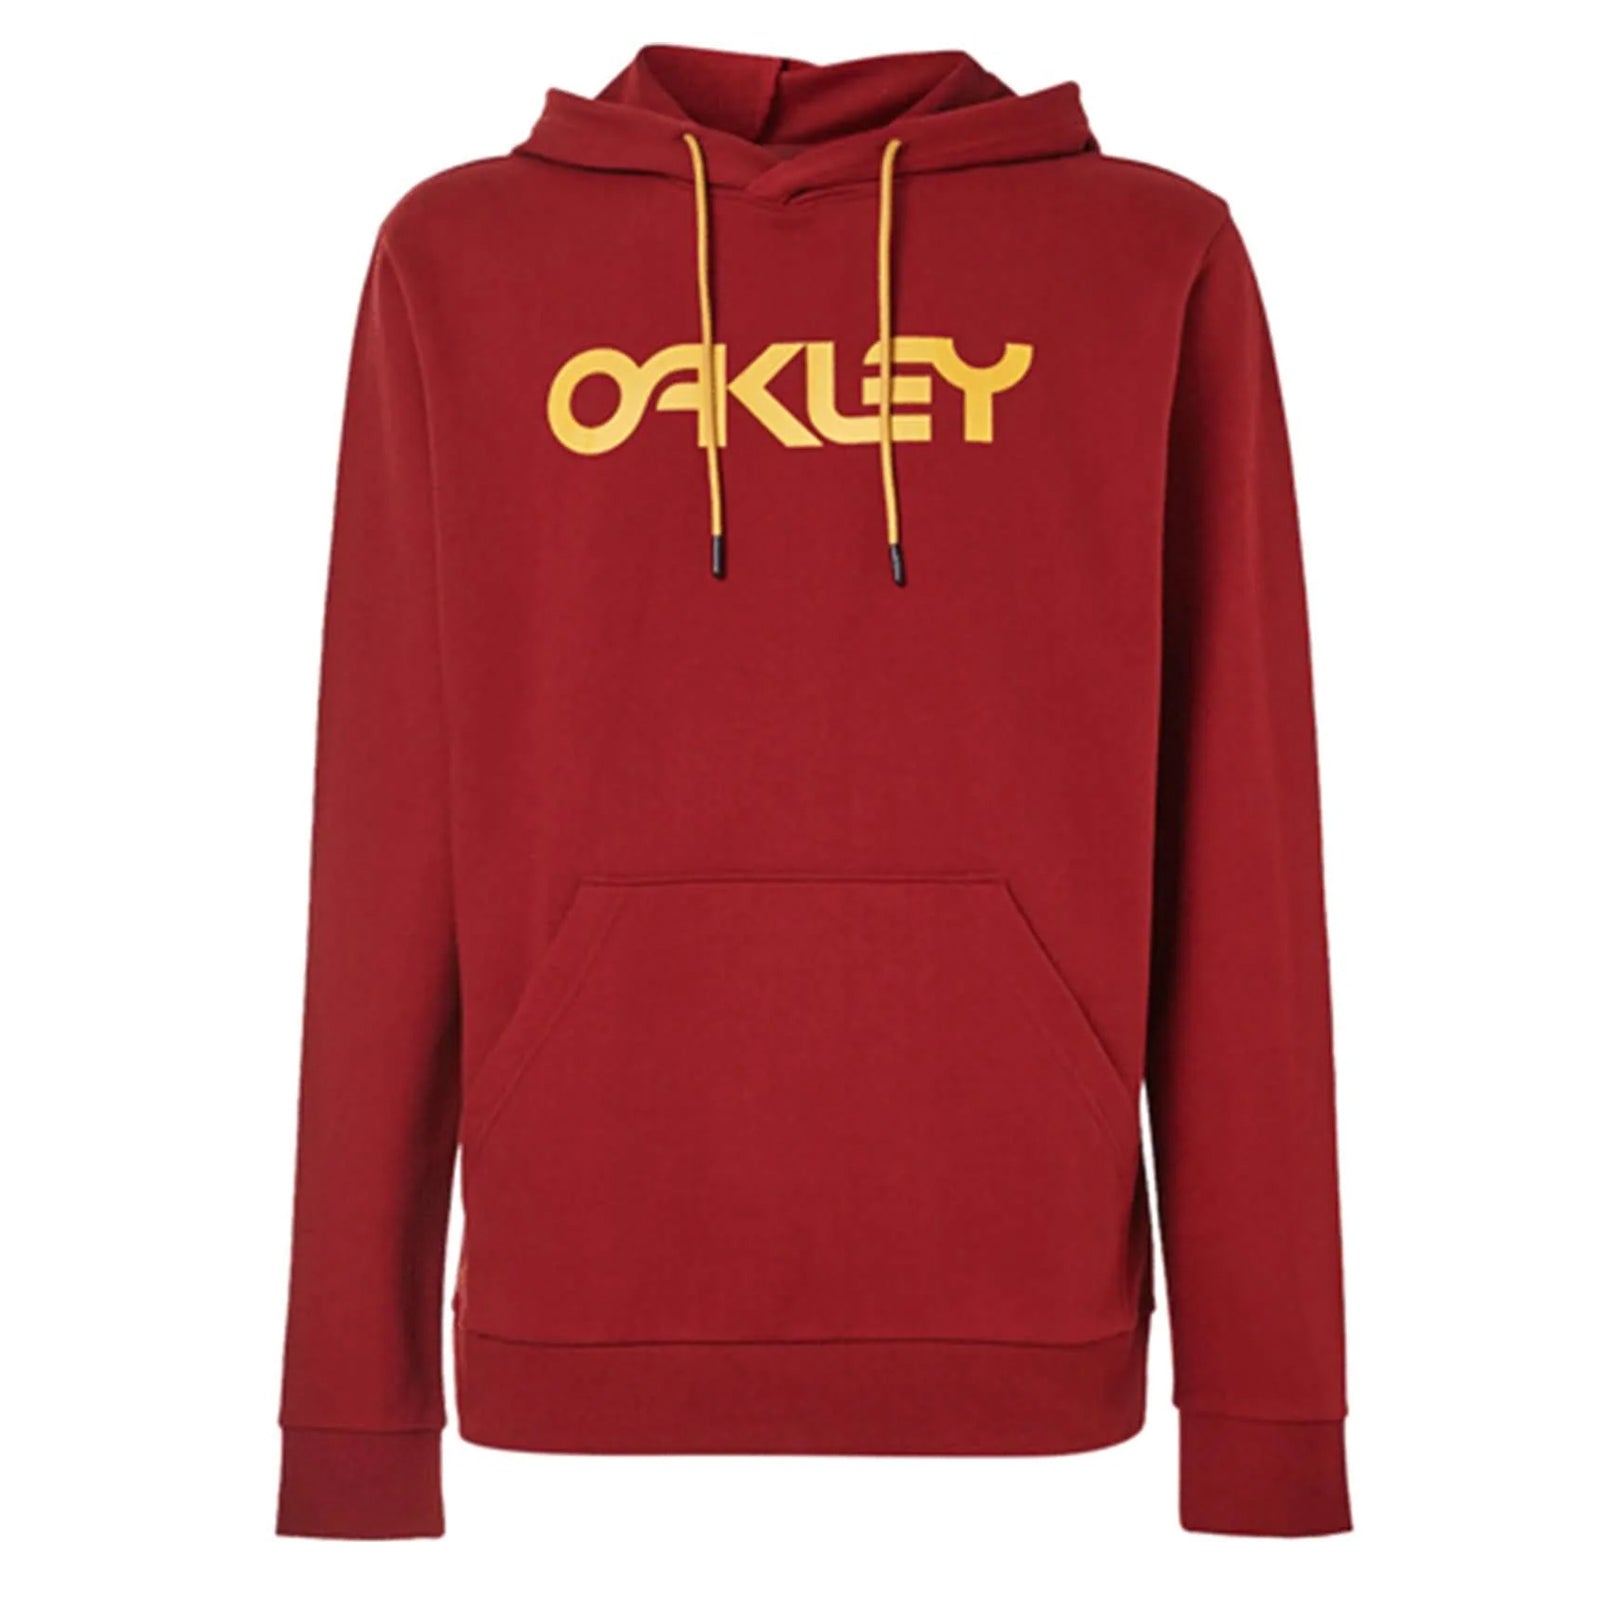 Oakley B1B 2.0 Men's Hoody Pullover Sweatshirts